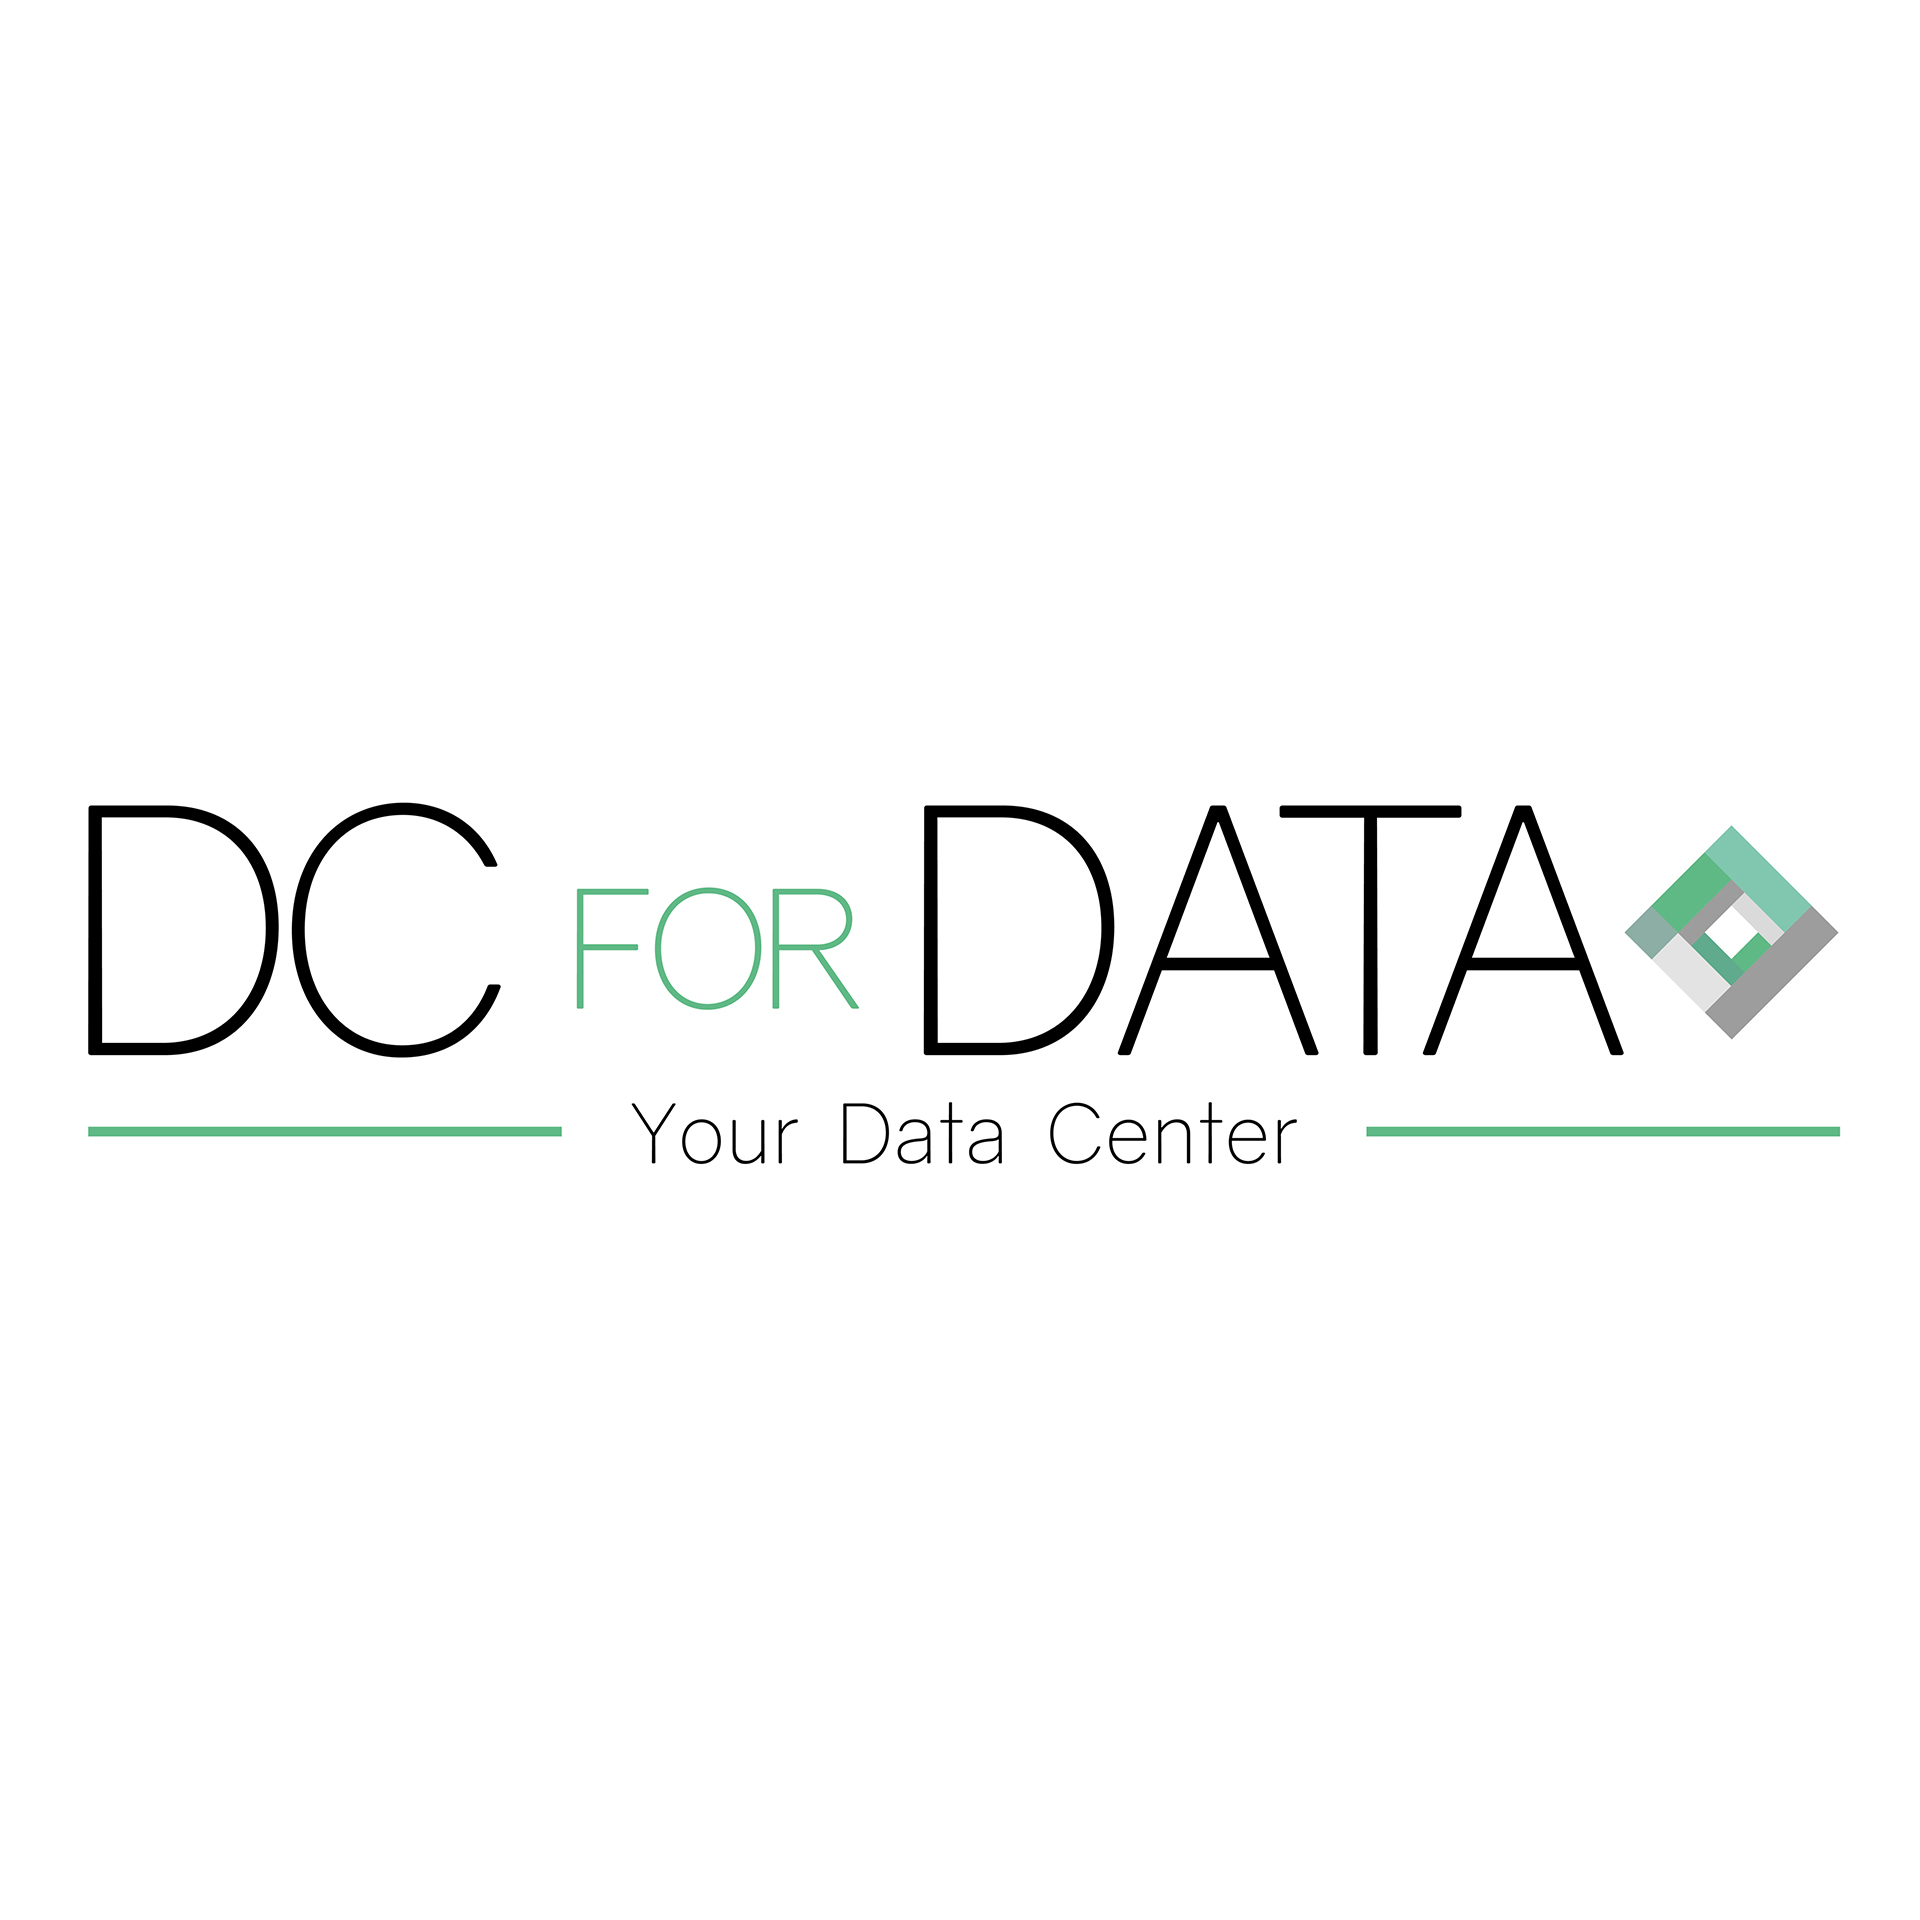 Voir la success story DCforDATA, une expertise des données forgée à Lyon